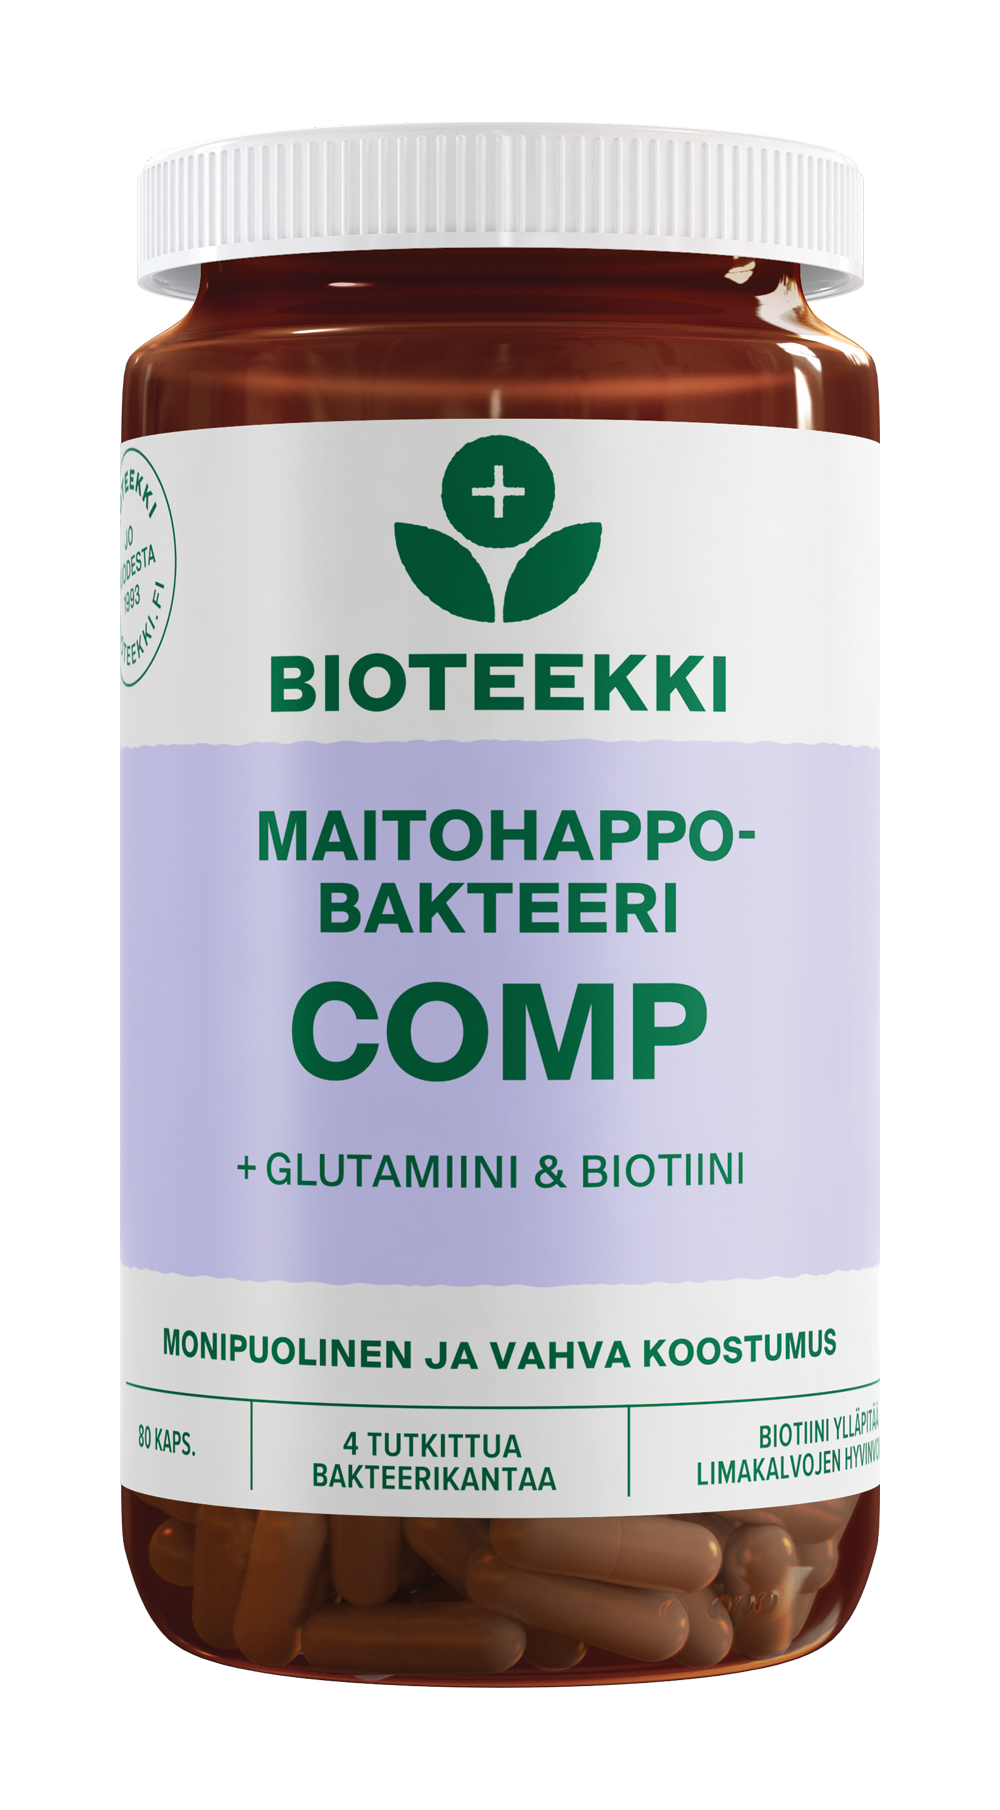 Bioteekki Maitohappobakteeri Comp-Bioteekin-Hyvinvoinnin Tavaratalo